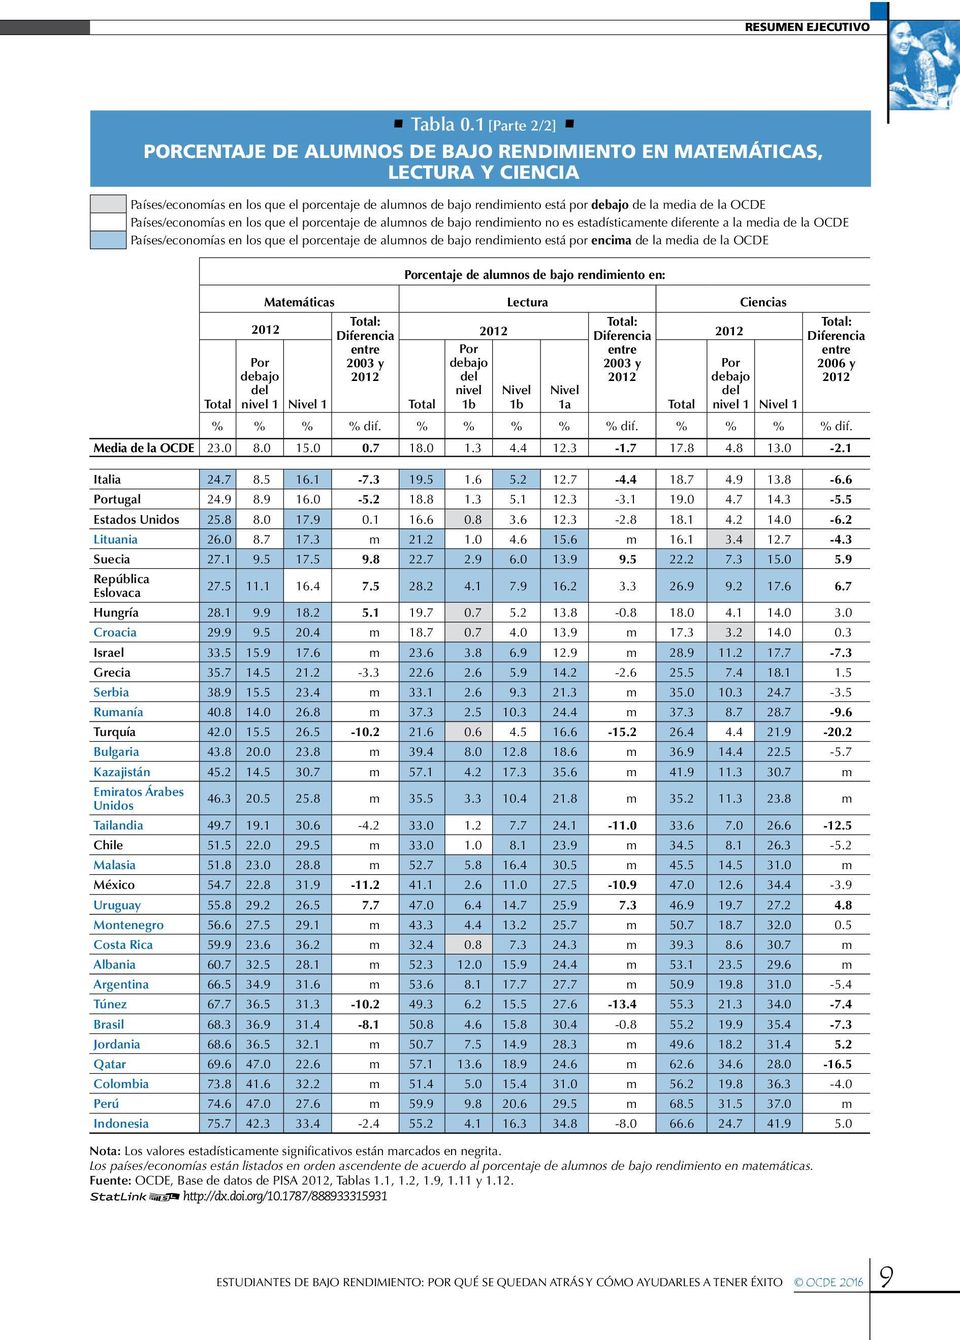 OCDE Países/economías en los que el porcentaje de alumnos de bajo rendimiento no es estadísticamente diferente a la media de la OCDE Países/economías en los que el porcentaje de alumnos de bajo